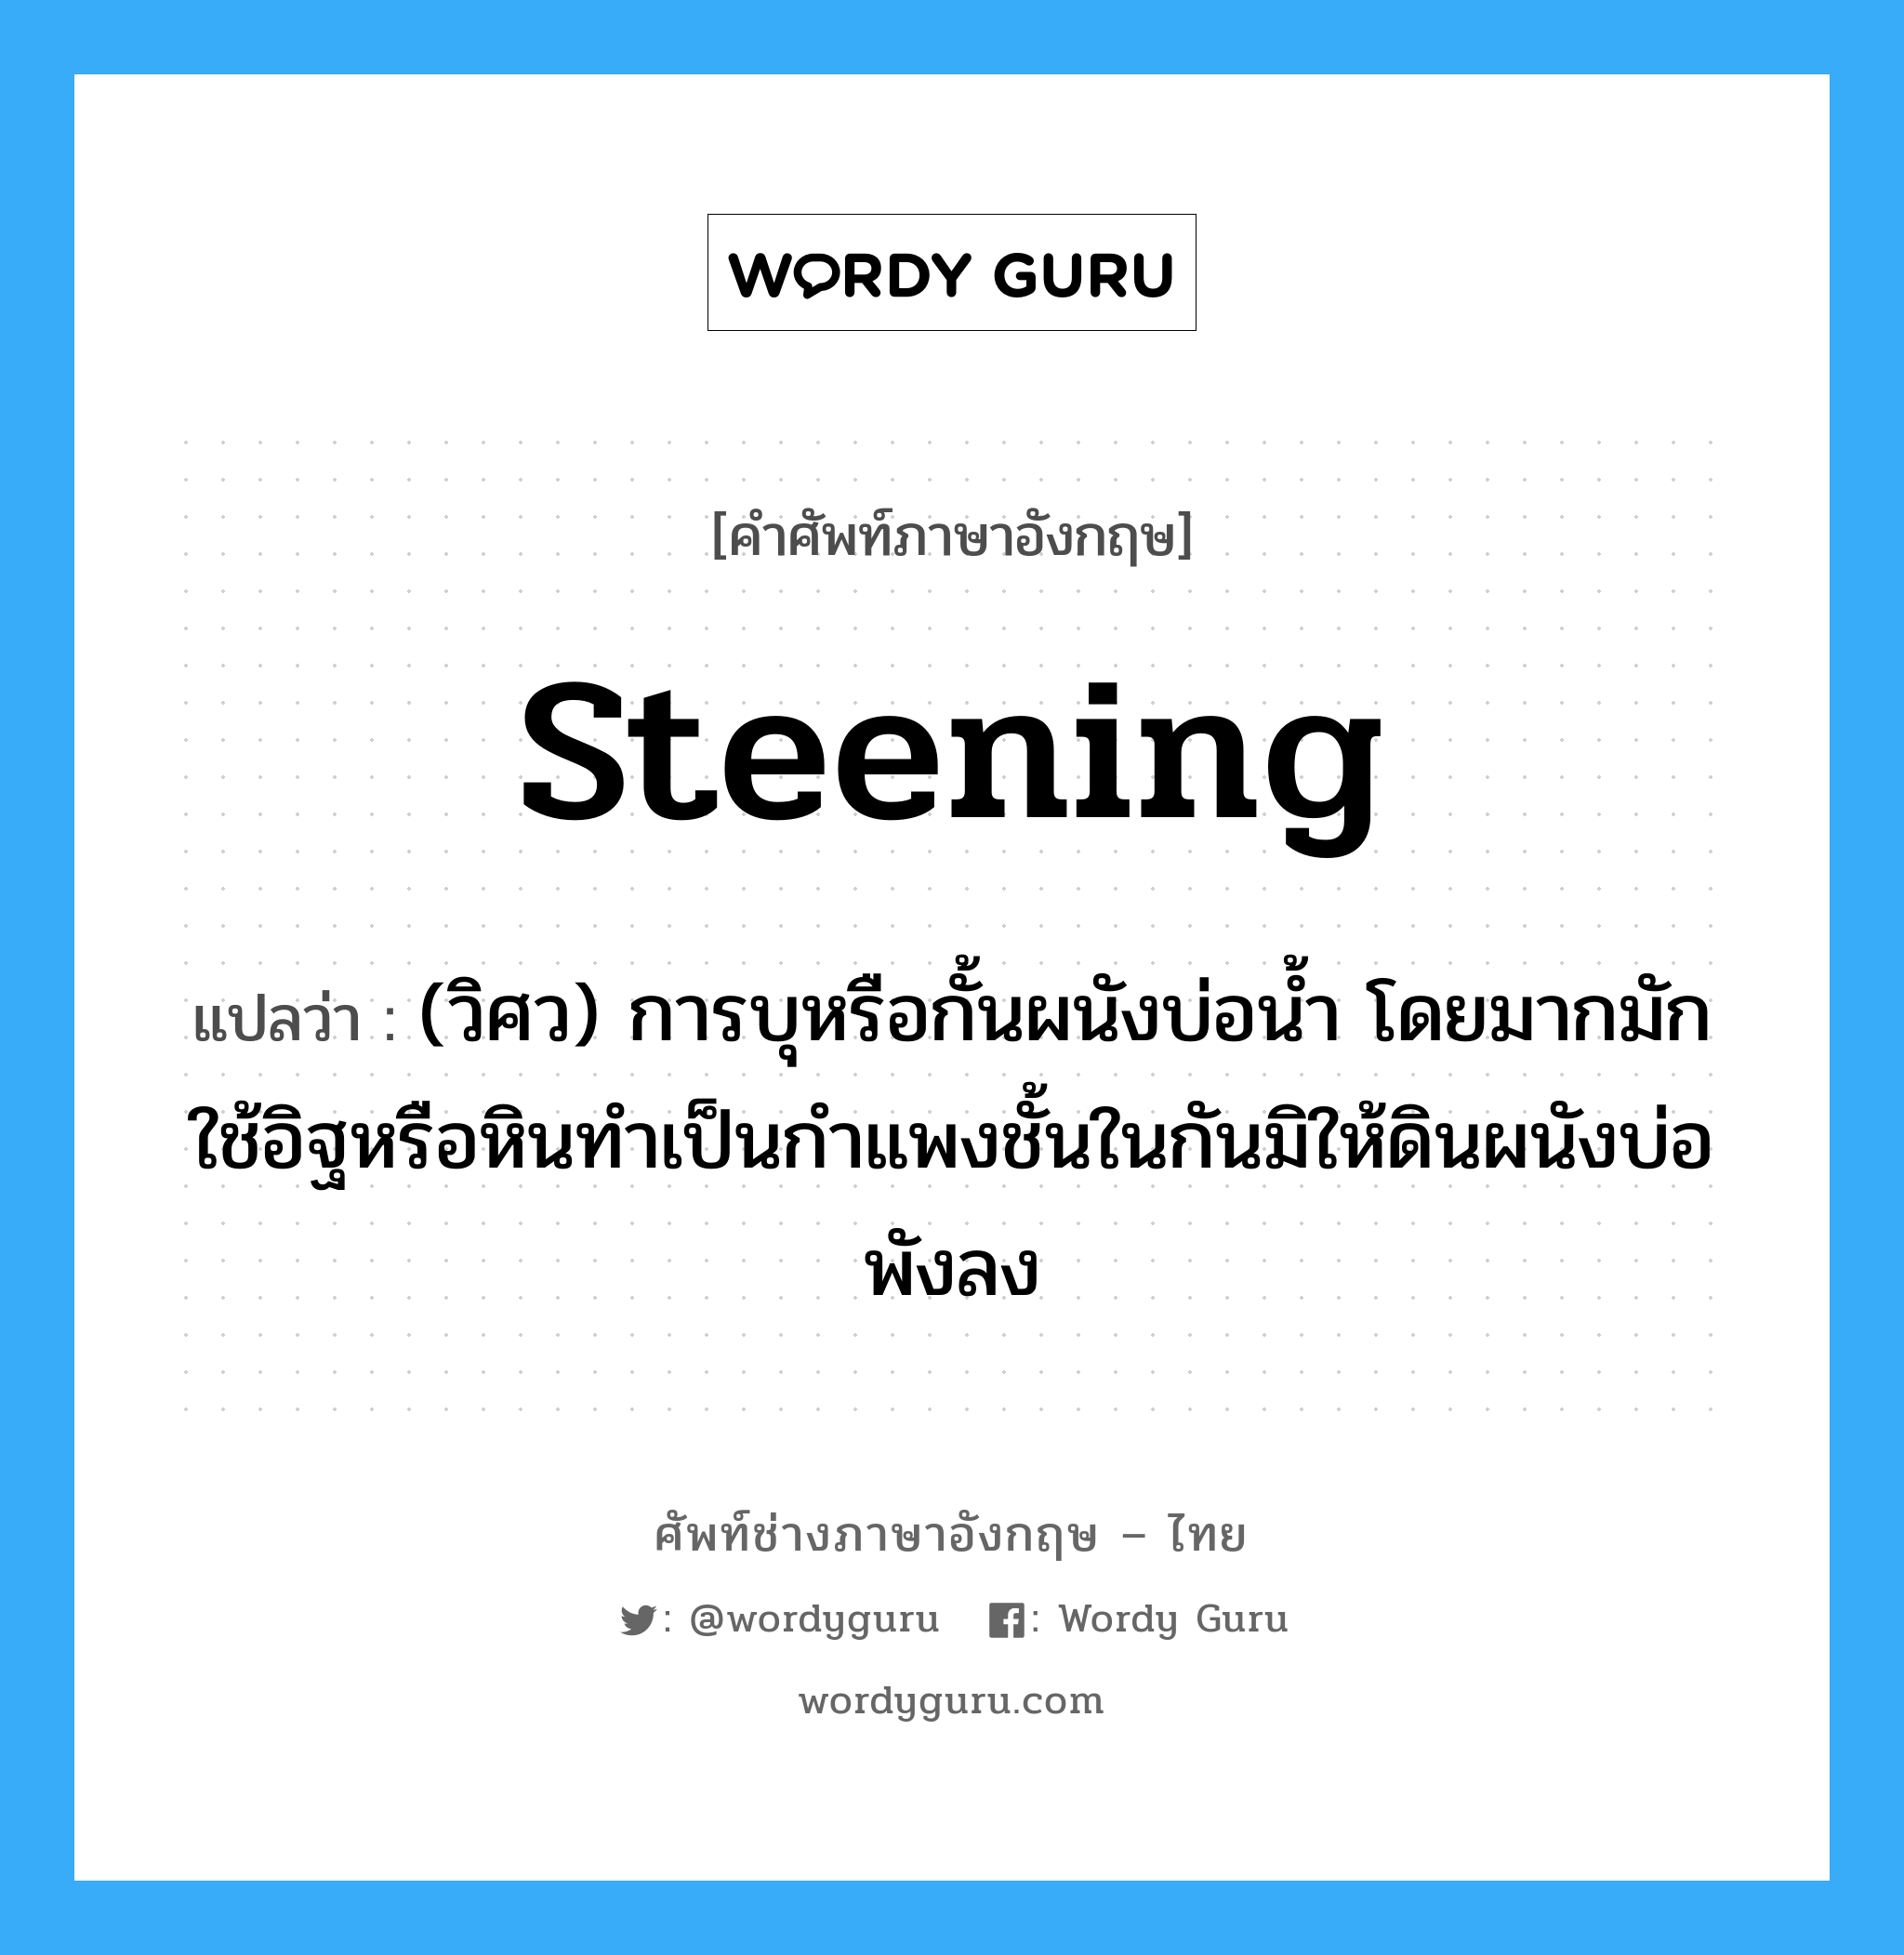 steening แปลว่า?, คำศัพท์ช่างภาษาอังกฤษ - ไทย steening คำศัพท์ภาษาอังกฤษ steening แปลว่า (วิศว) การบุหรือกั้นผนังบ่อน้ำ โดยมากมักใช้อิฐหรือหินทำเป็นกำแพงชั้นในกันมิให้ดินผนังบ่อพังลง